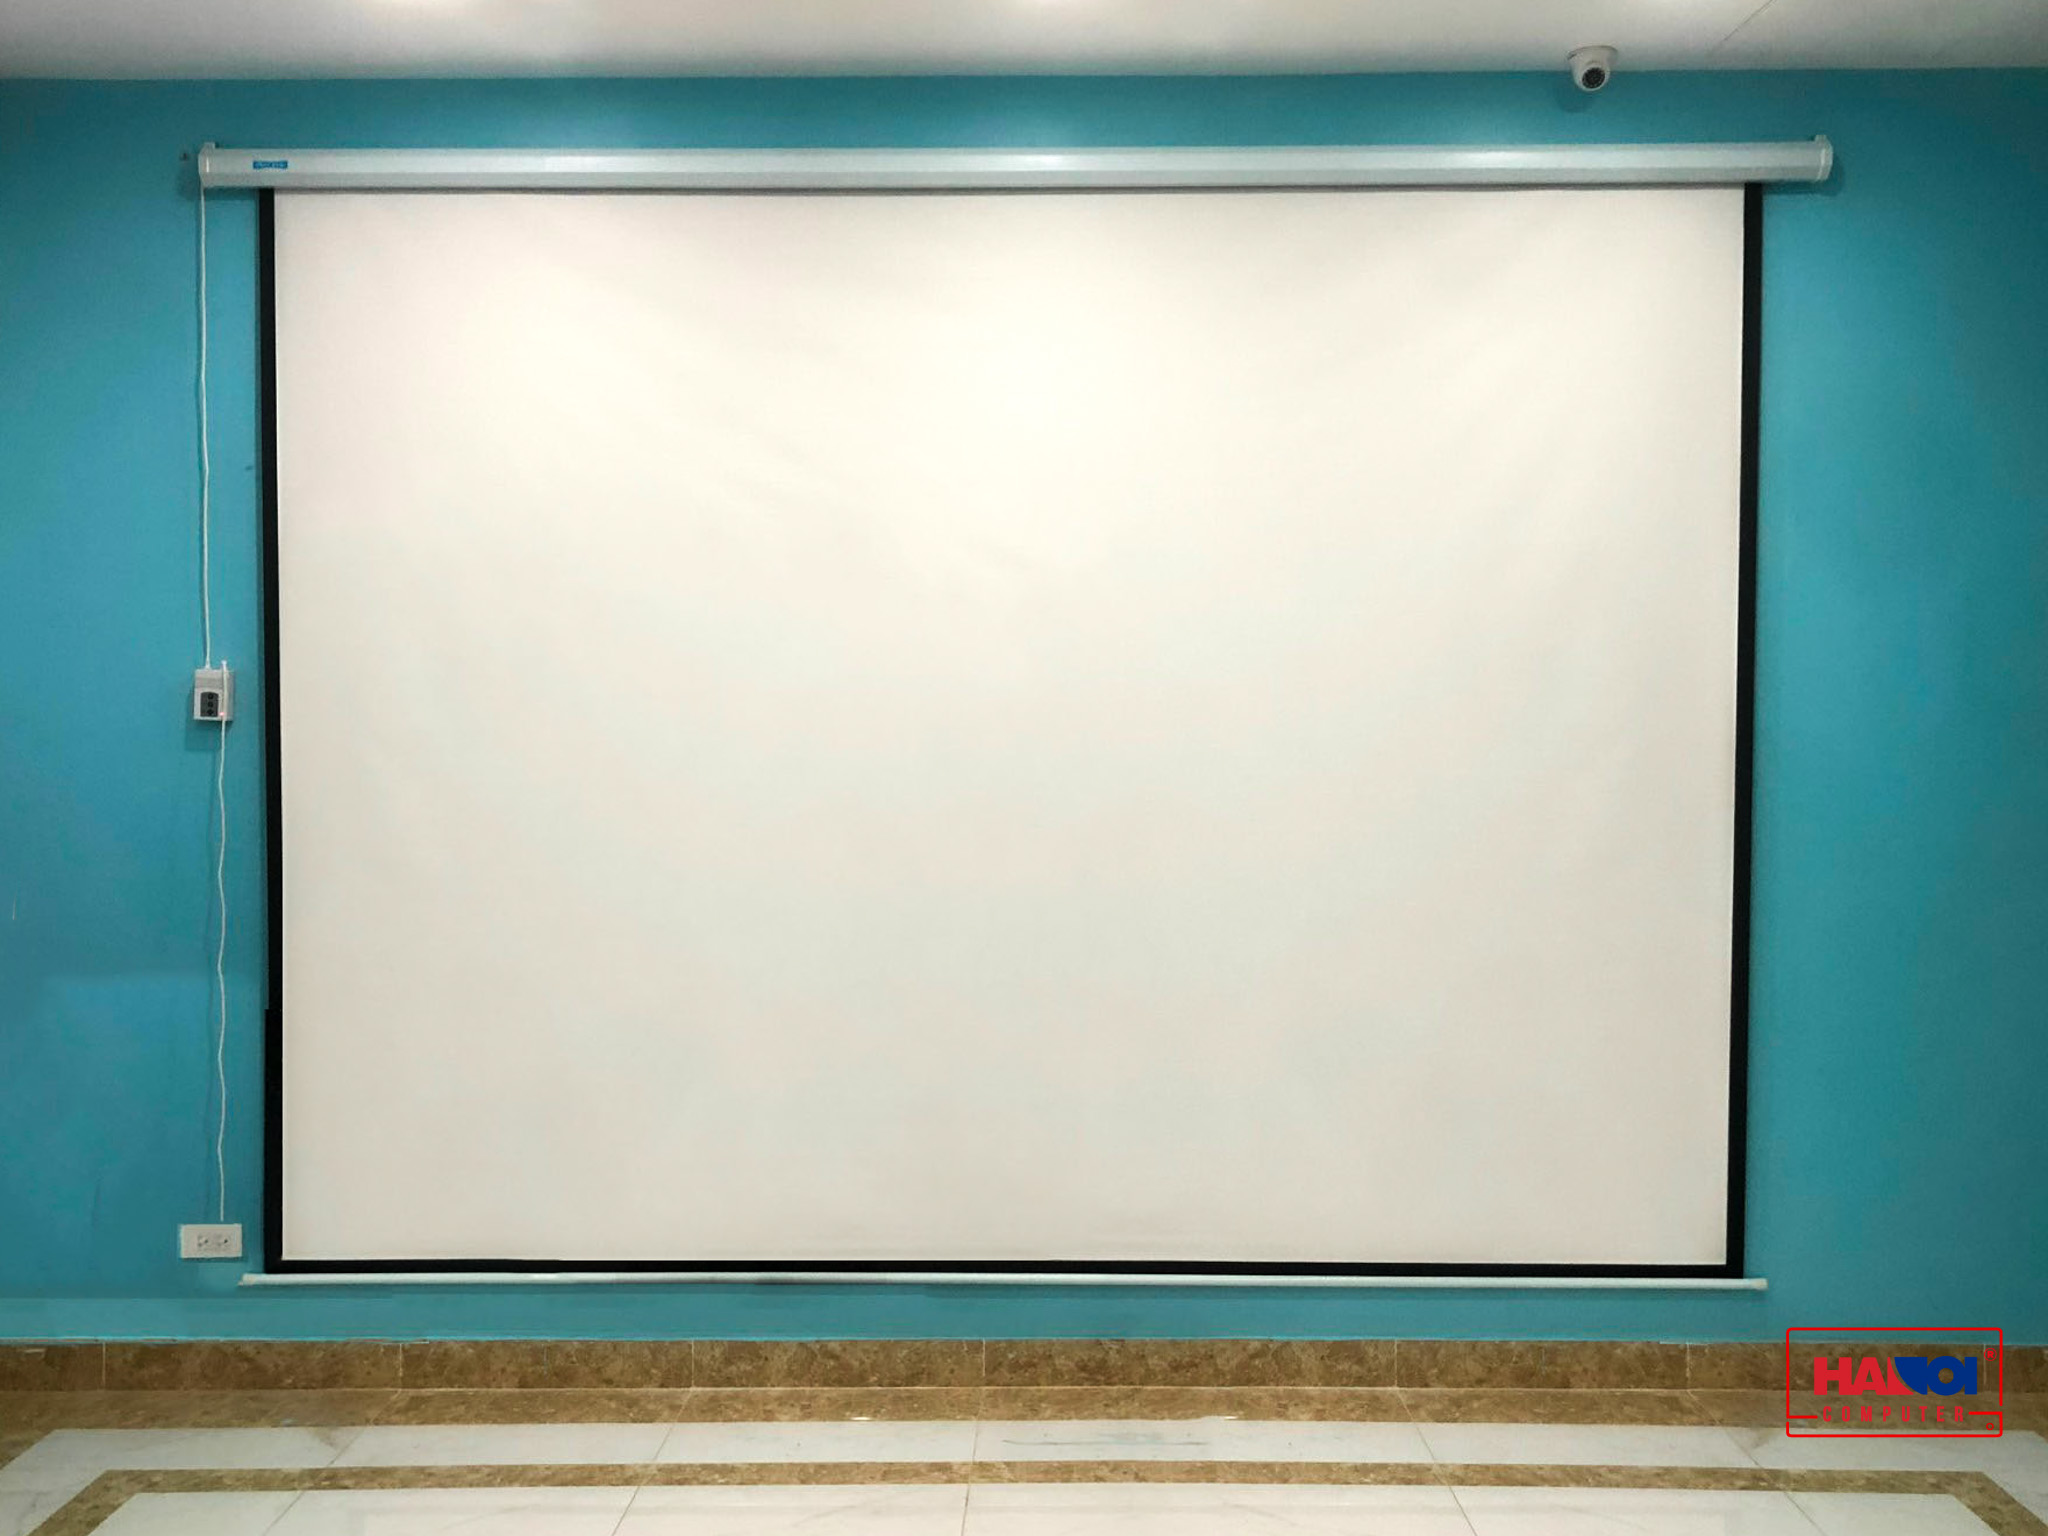 Màn chiếu điện Dalite FILM200 (4m43 x 2m49) - 200 inch